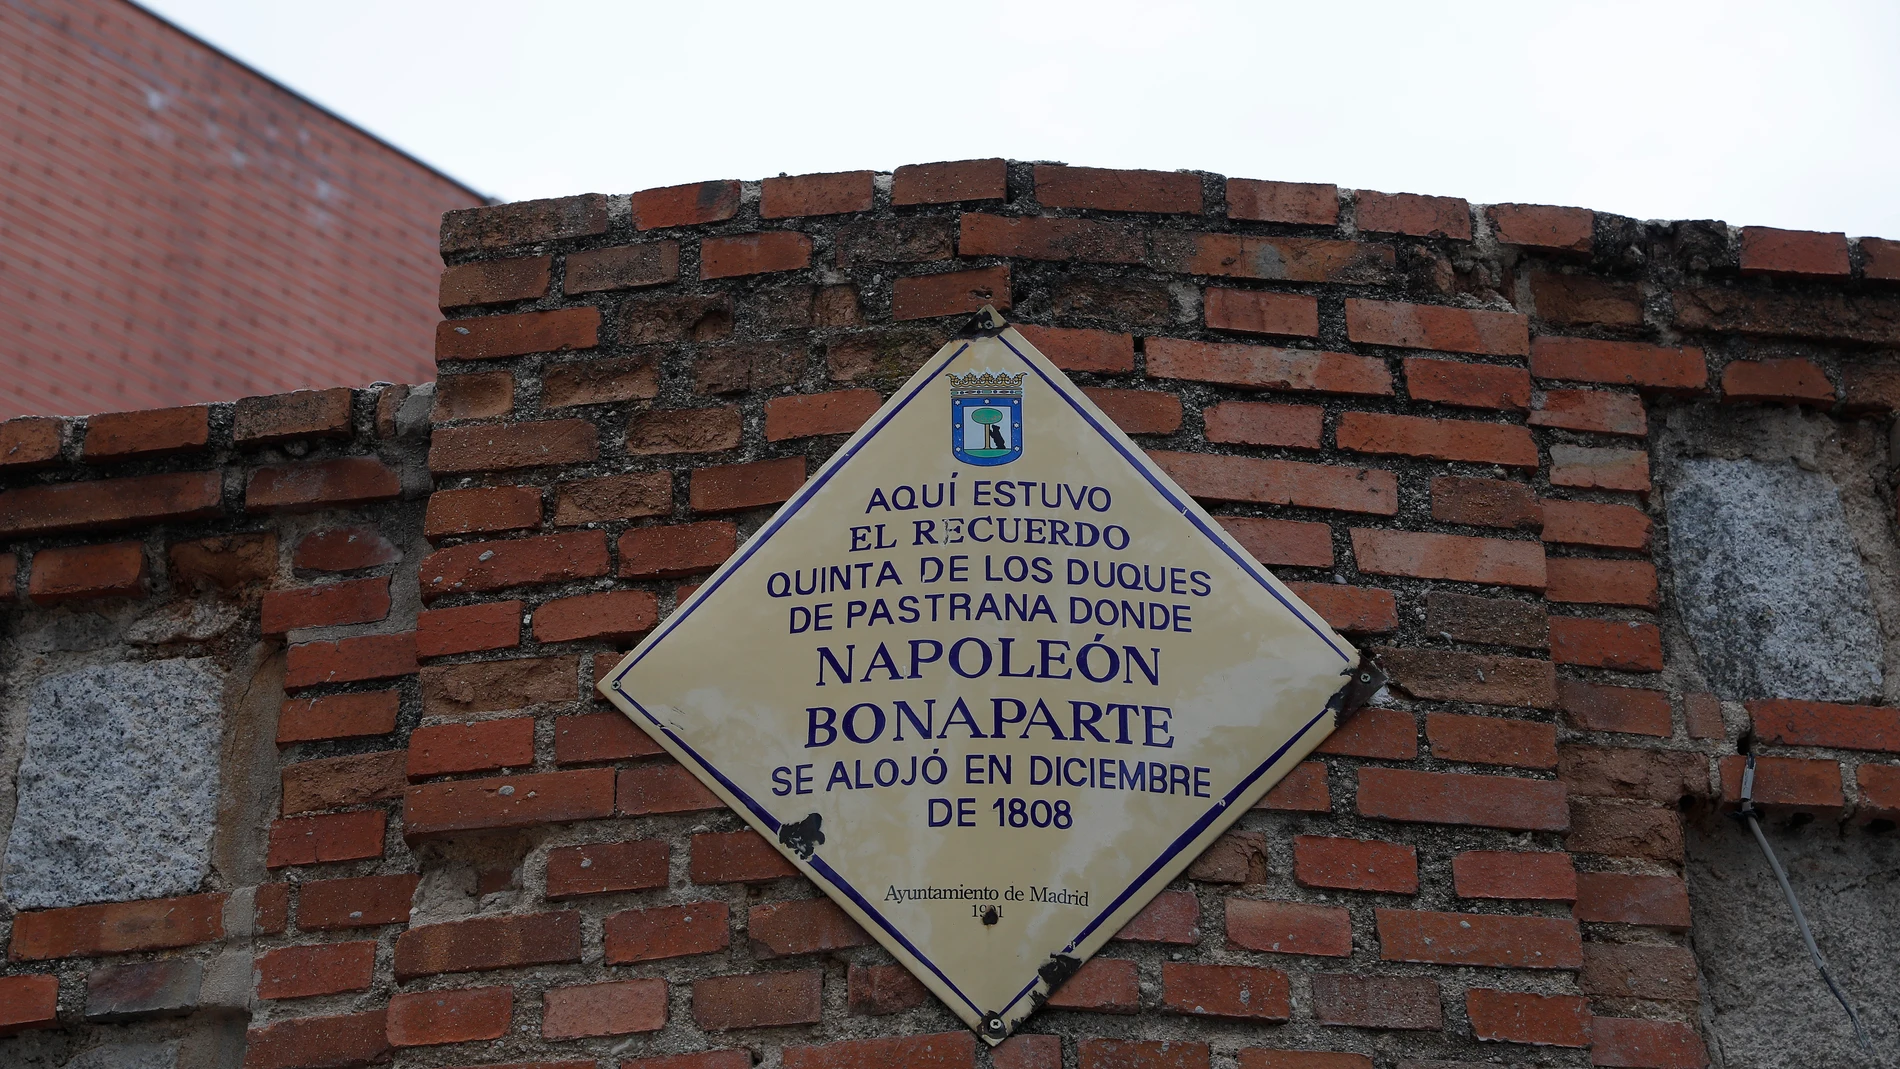 Placa de El Recuerdo, quinta de los duques de Pastrana donde Napoleón Bonaparte estuvo alojado en diciembre de 1808